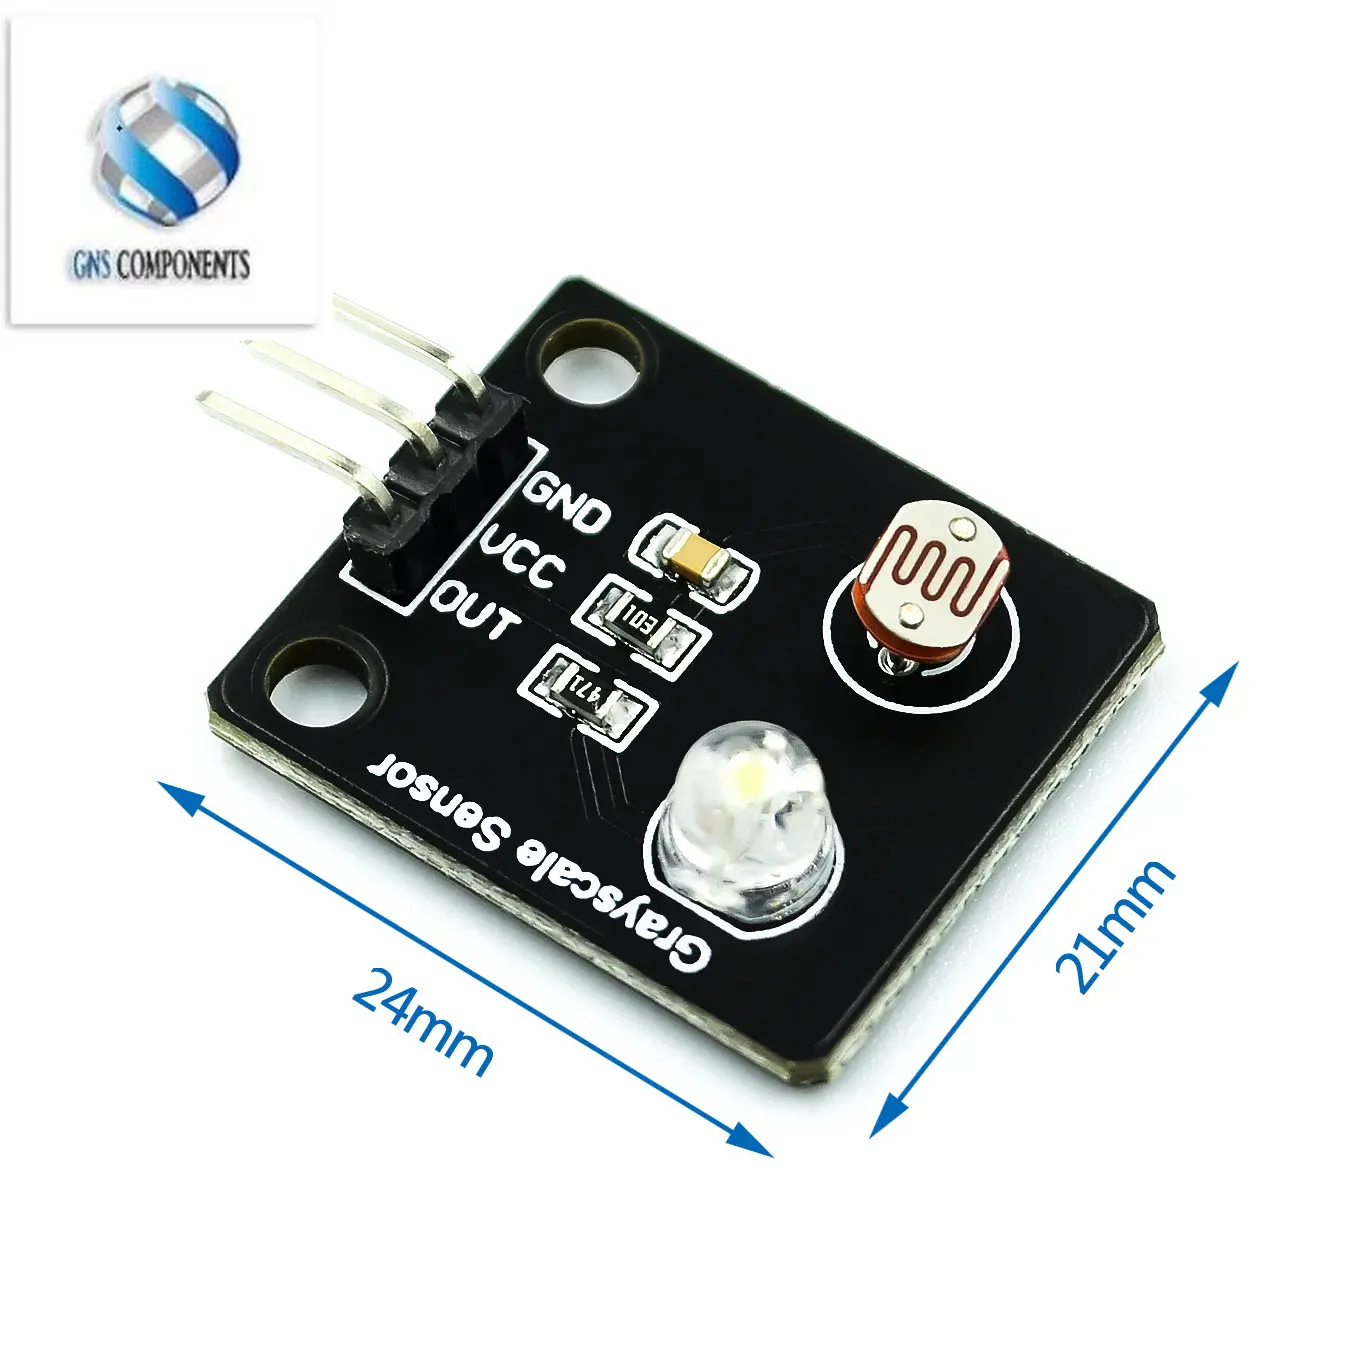 Светочувствительного резистивного датчика освещенности, аналогового датчика оттенков серого, модуля отслеживания линий электронной платы Для Arduino DIY Kit